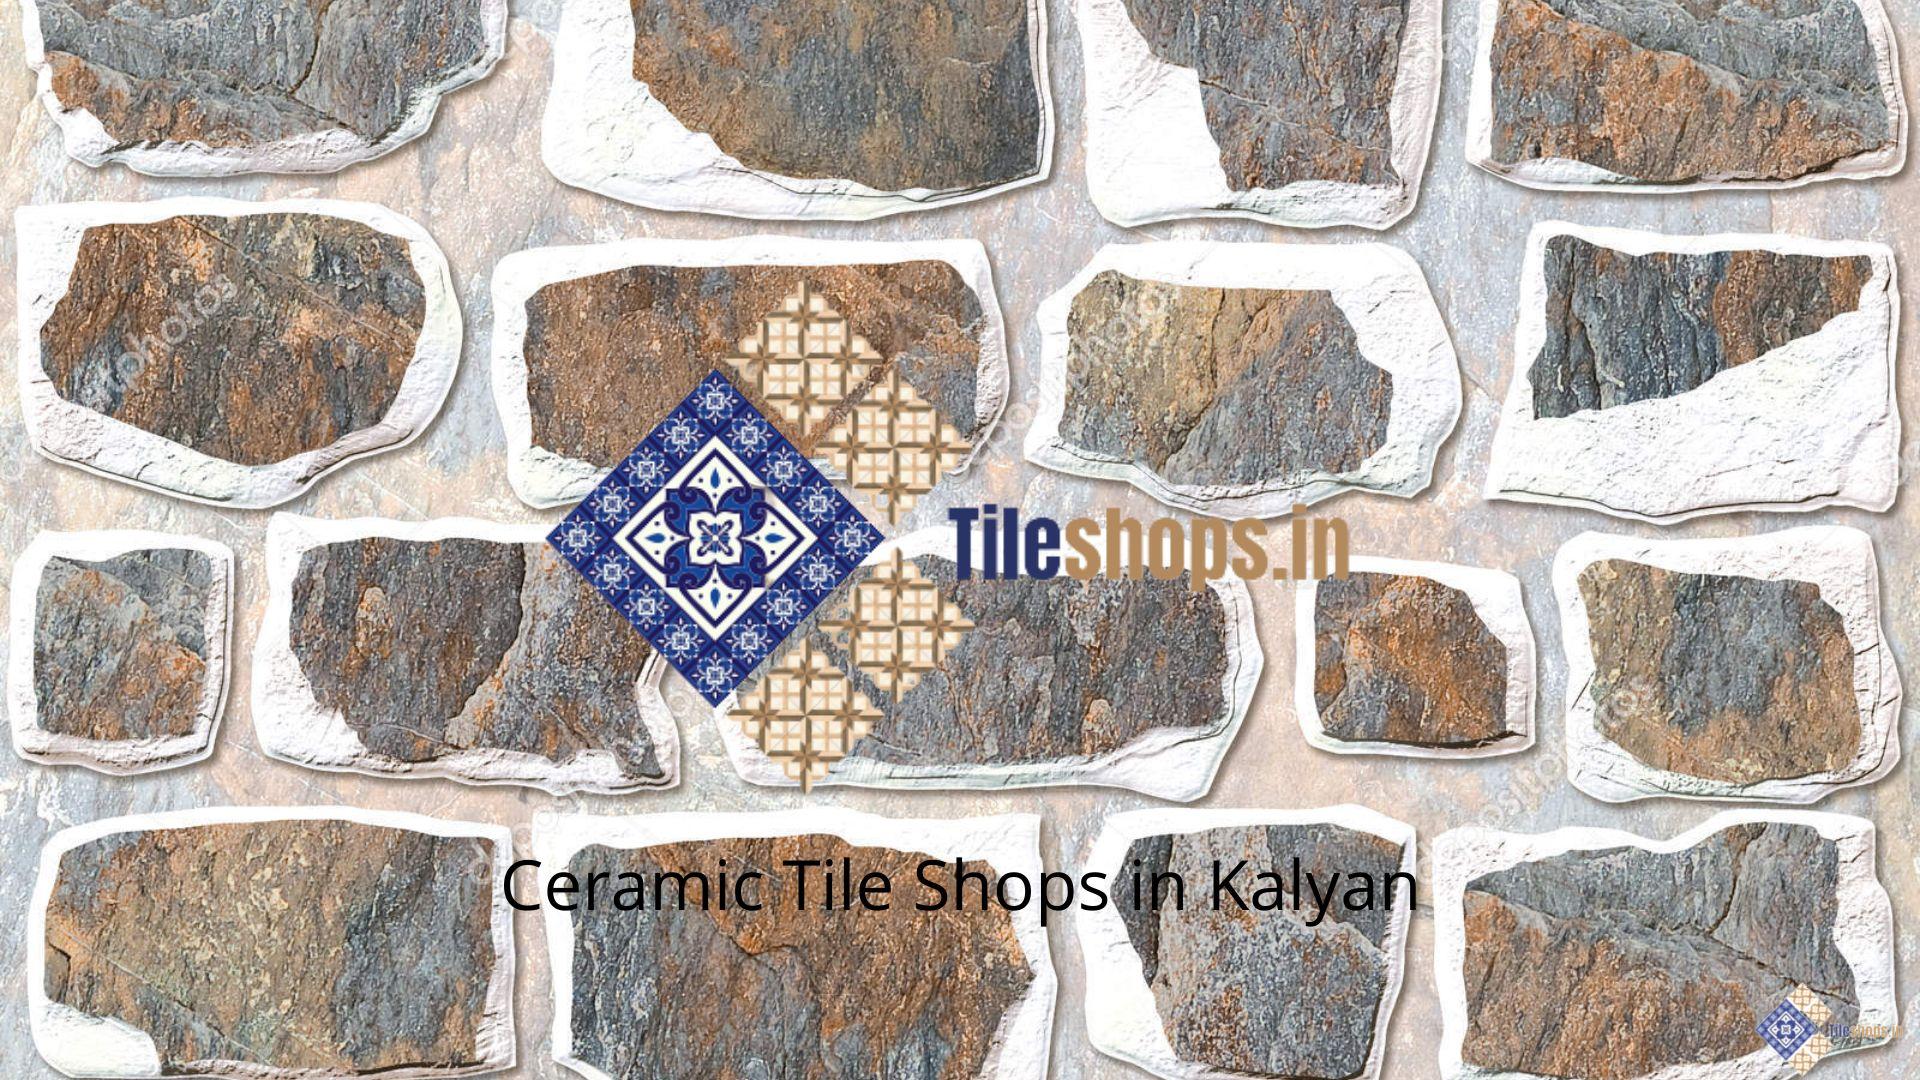 Ceramic Tile Shops in Kalyan